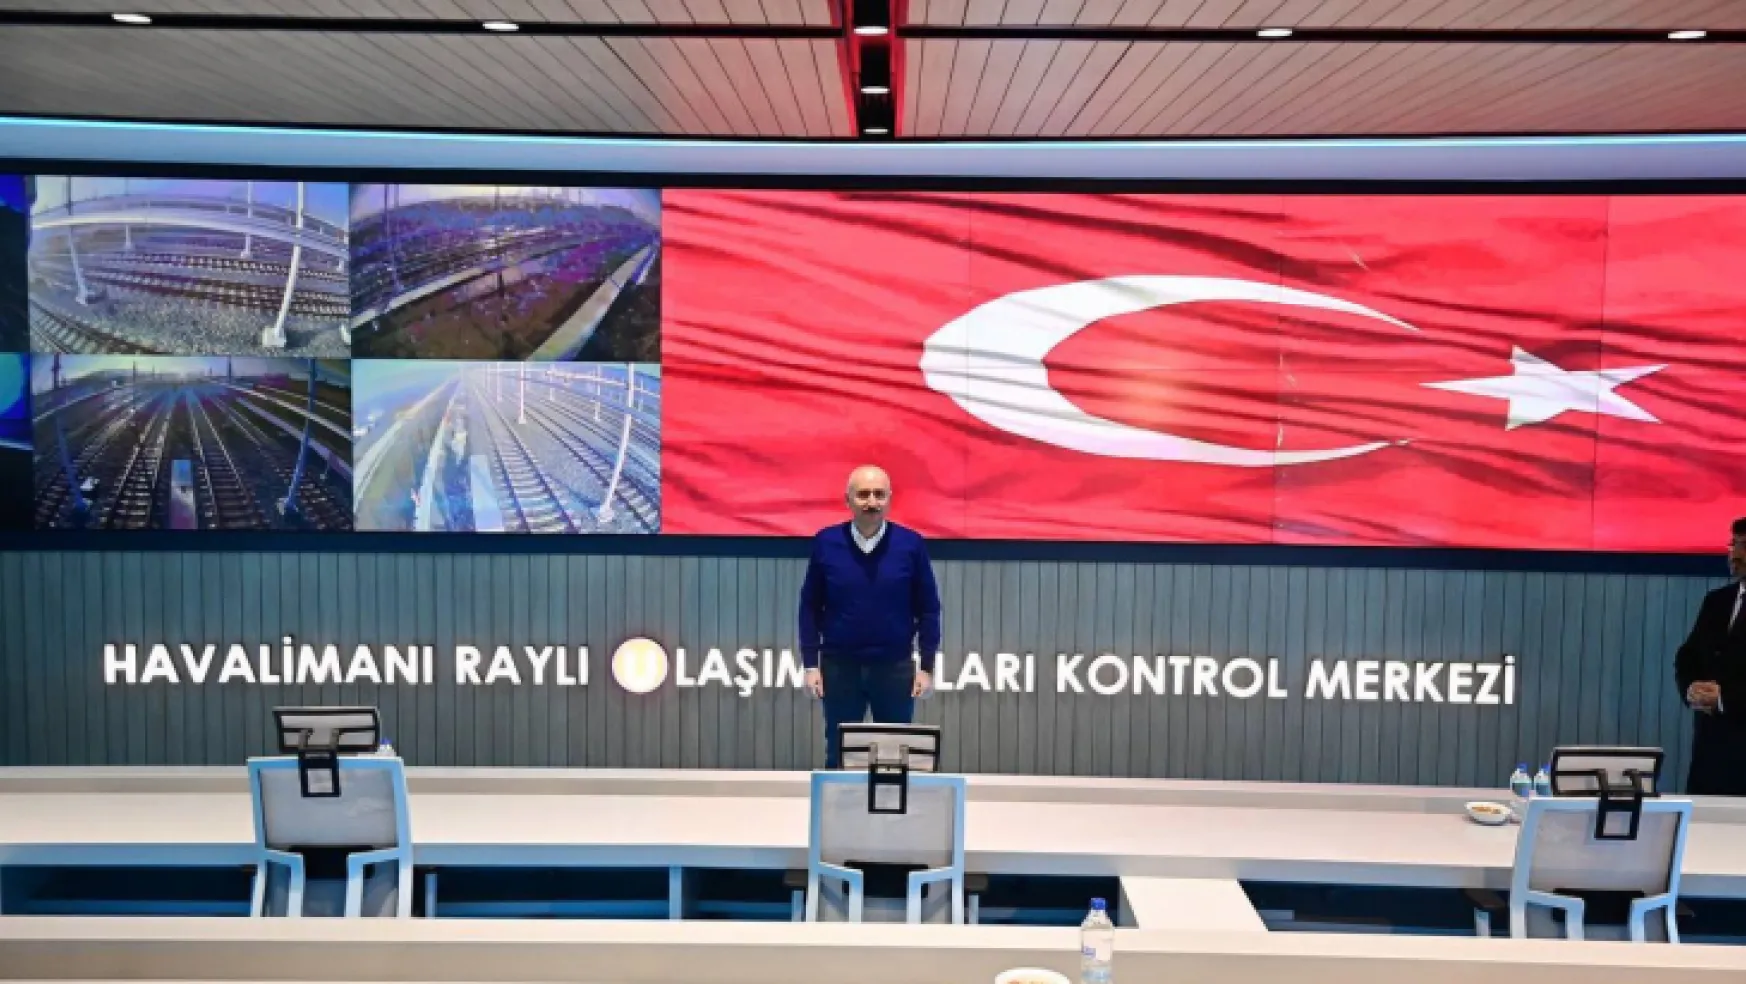 Kontrol Merkezini de Kapsayan Depo Tesisi, İstanbul Havalimanı Metrolarının Beyni Olacak